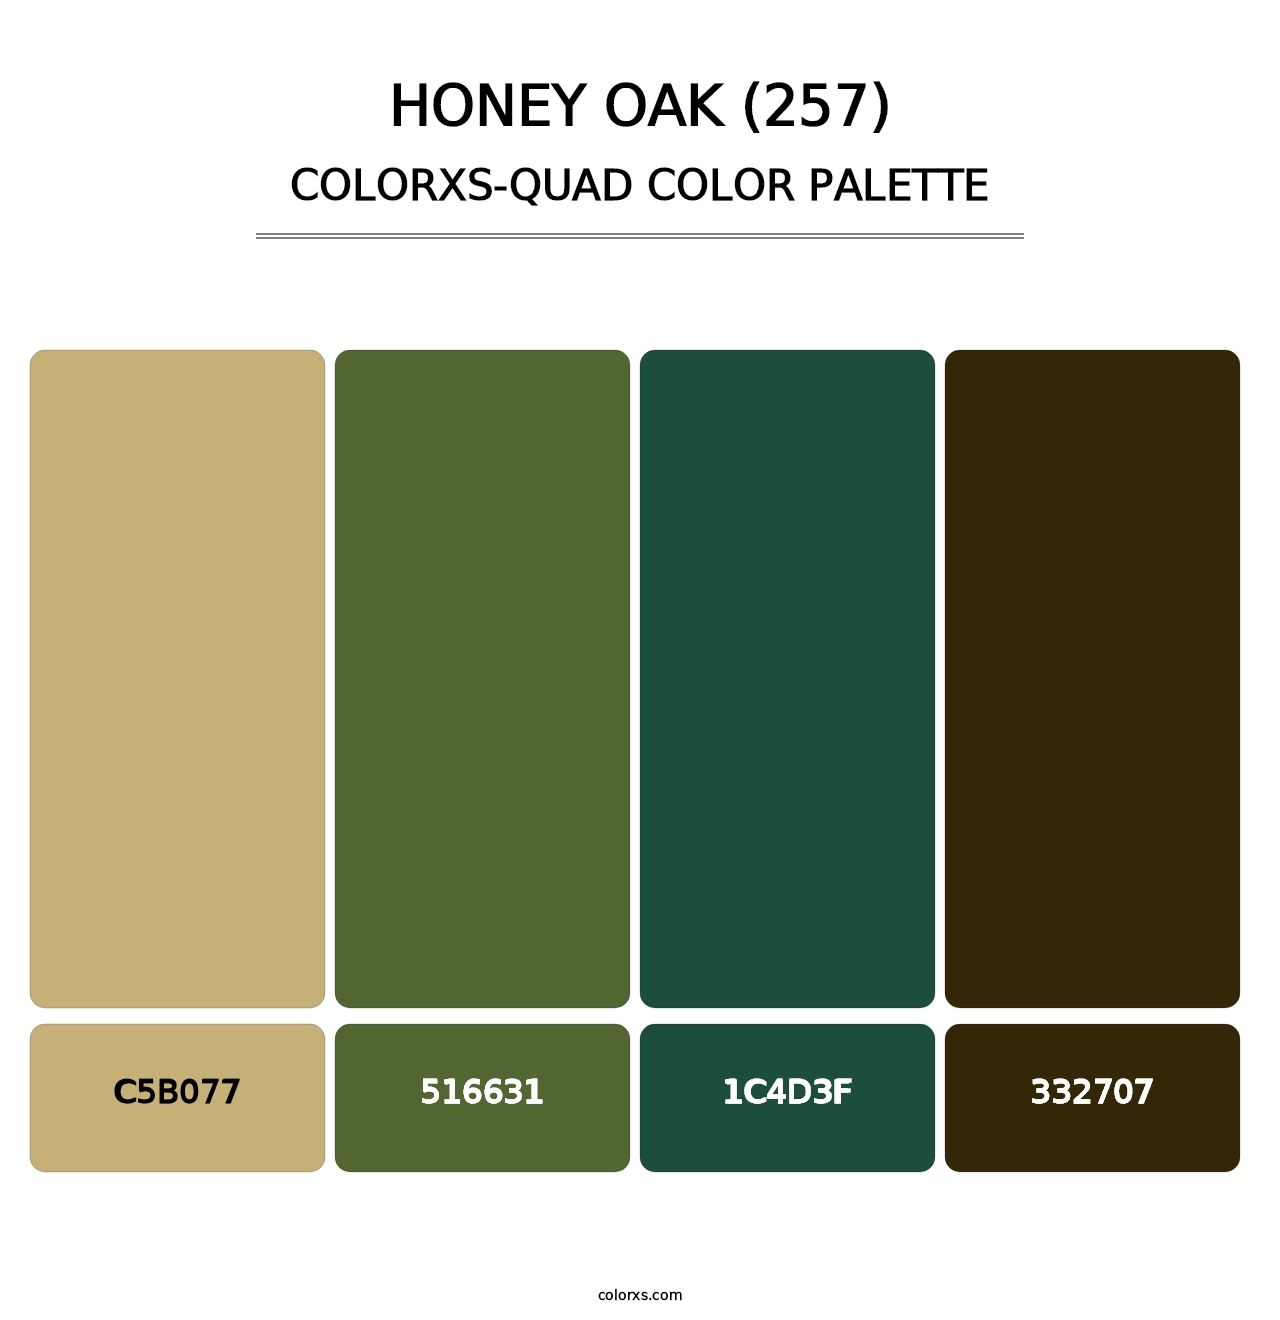 Honey Oak (257) - Colorxs Quad Palette